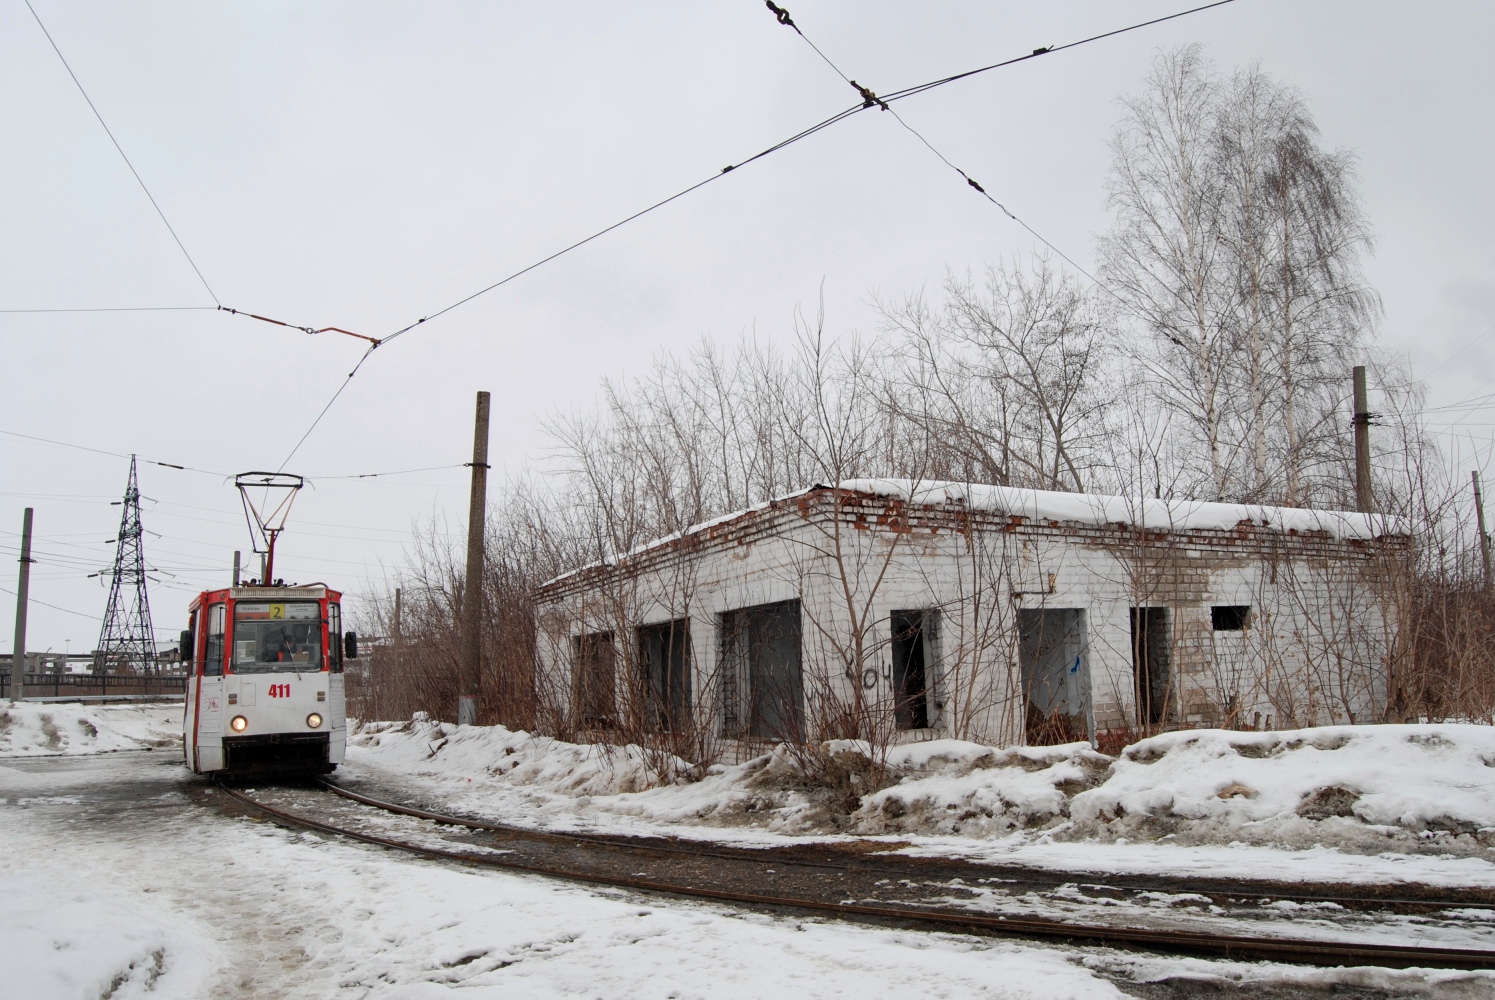 Пермь, 71-605А № 411; Пермь — Трамвайные линии и инфраструктура